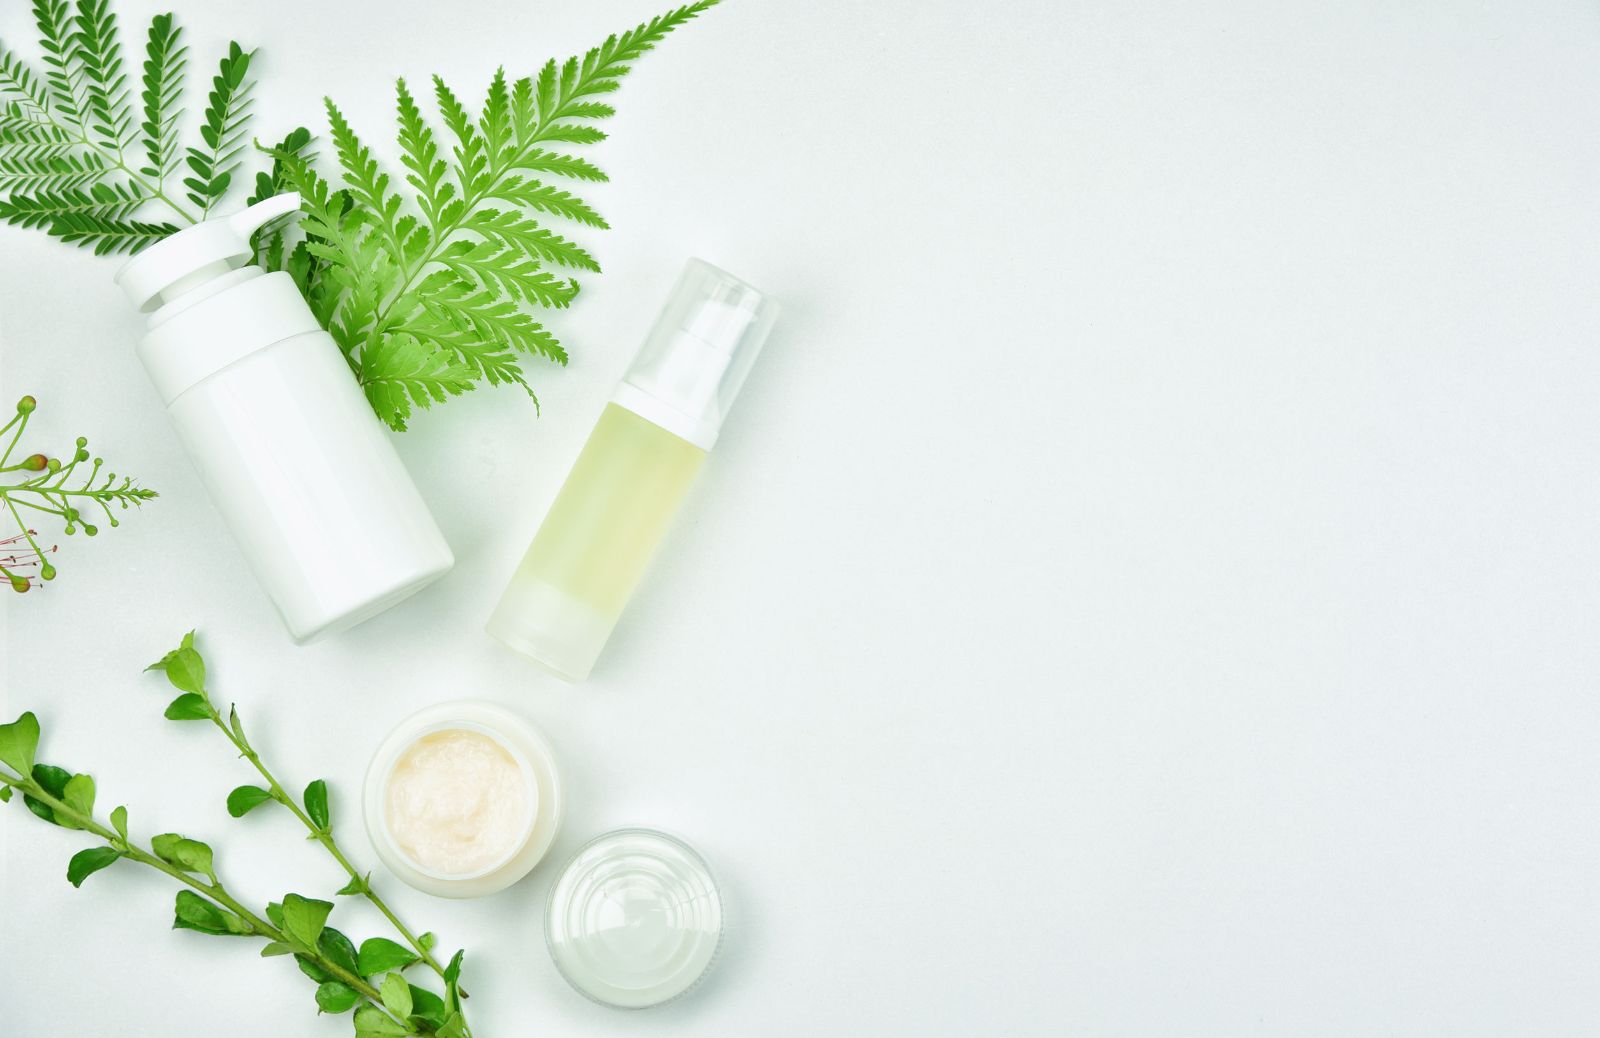 INCI: i top 10 ingredienti naturali da ricercare nei cosmetici